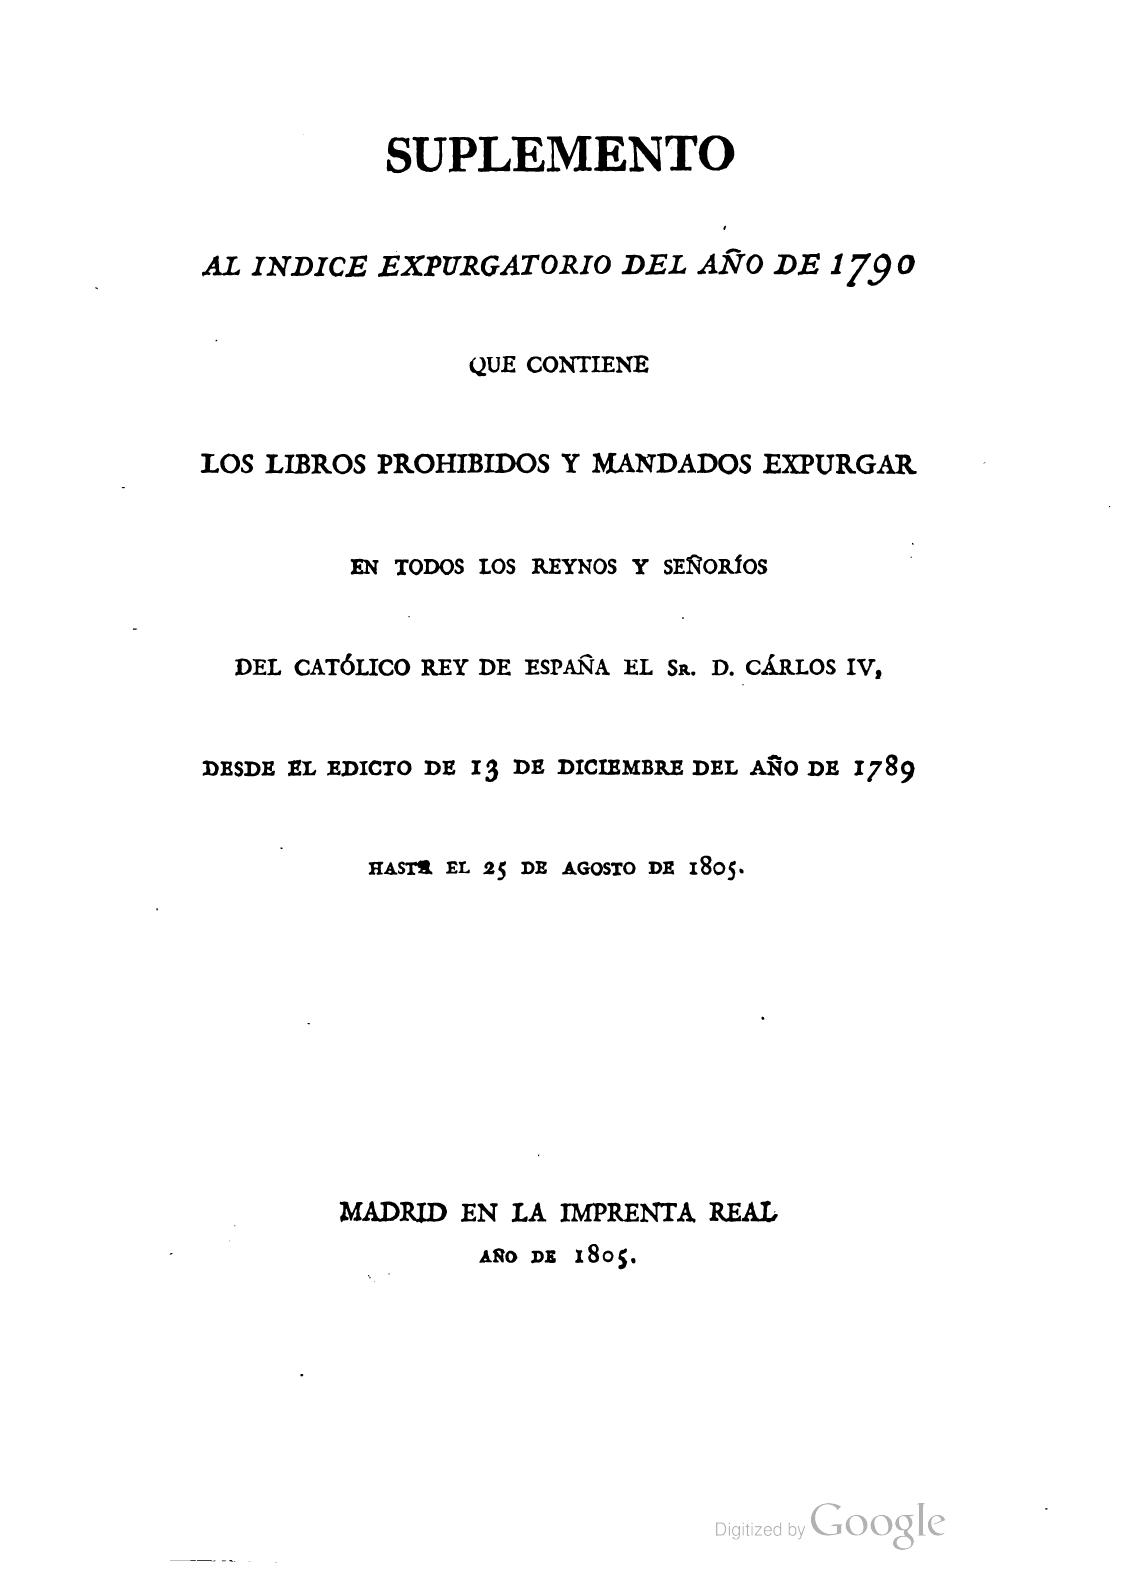 Suplemento al Índice expurgatorio del año de 1790 que contiene los libros prohibidos y mandados expurgar